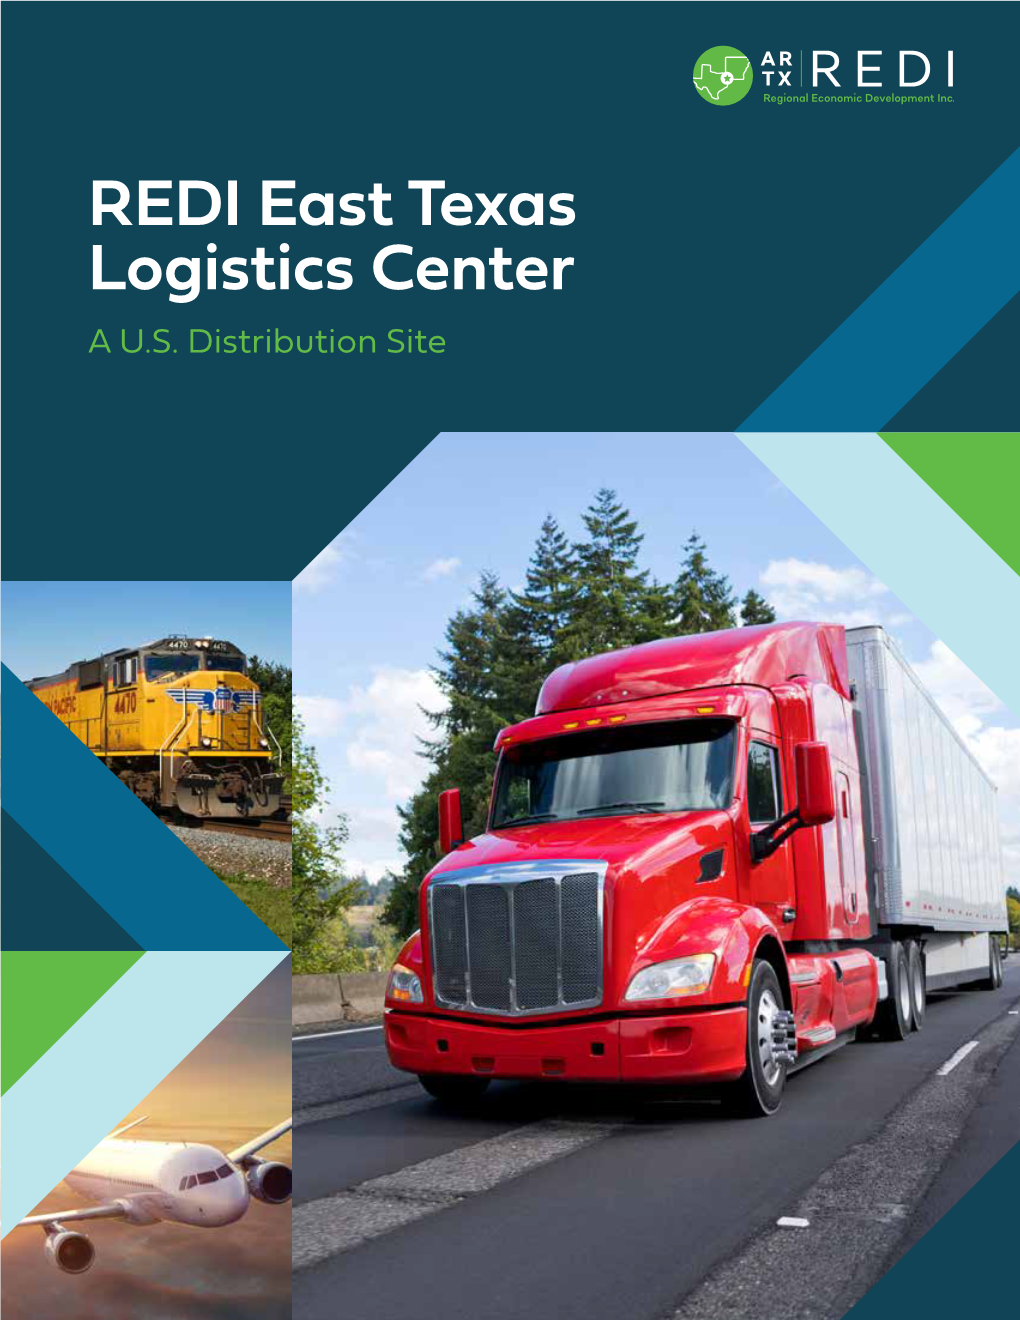 REDI East Texas Logistics Center a U.S